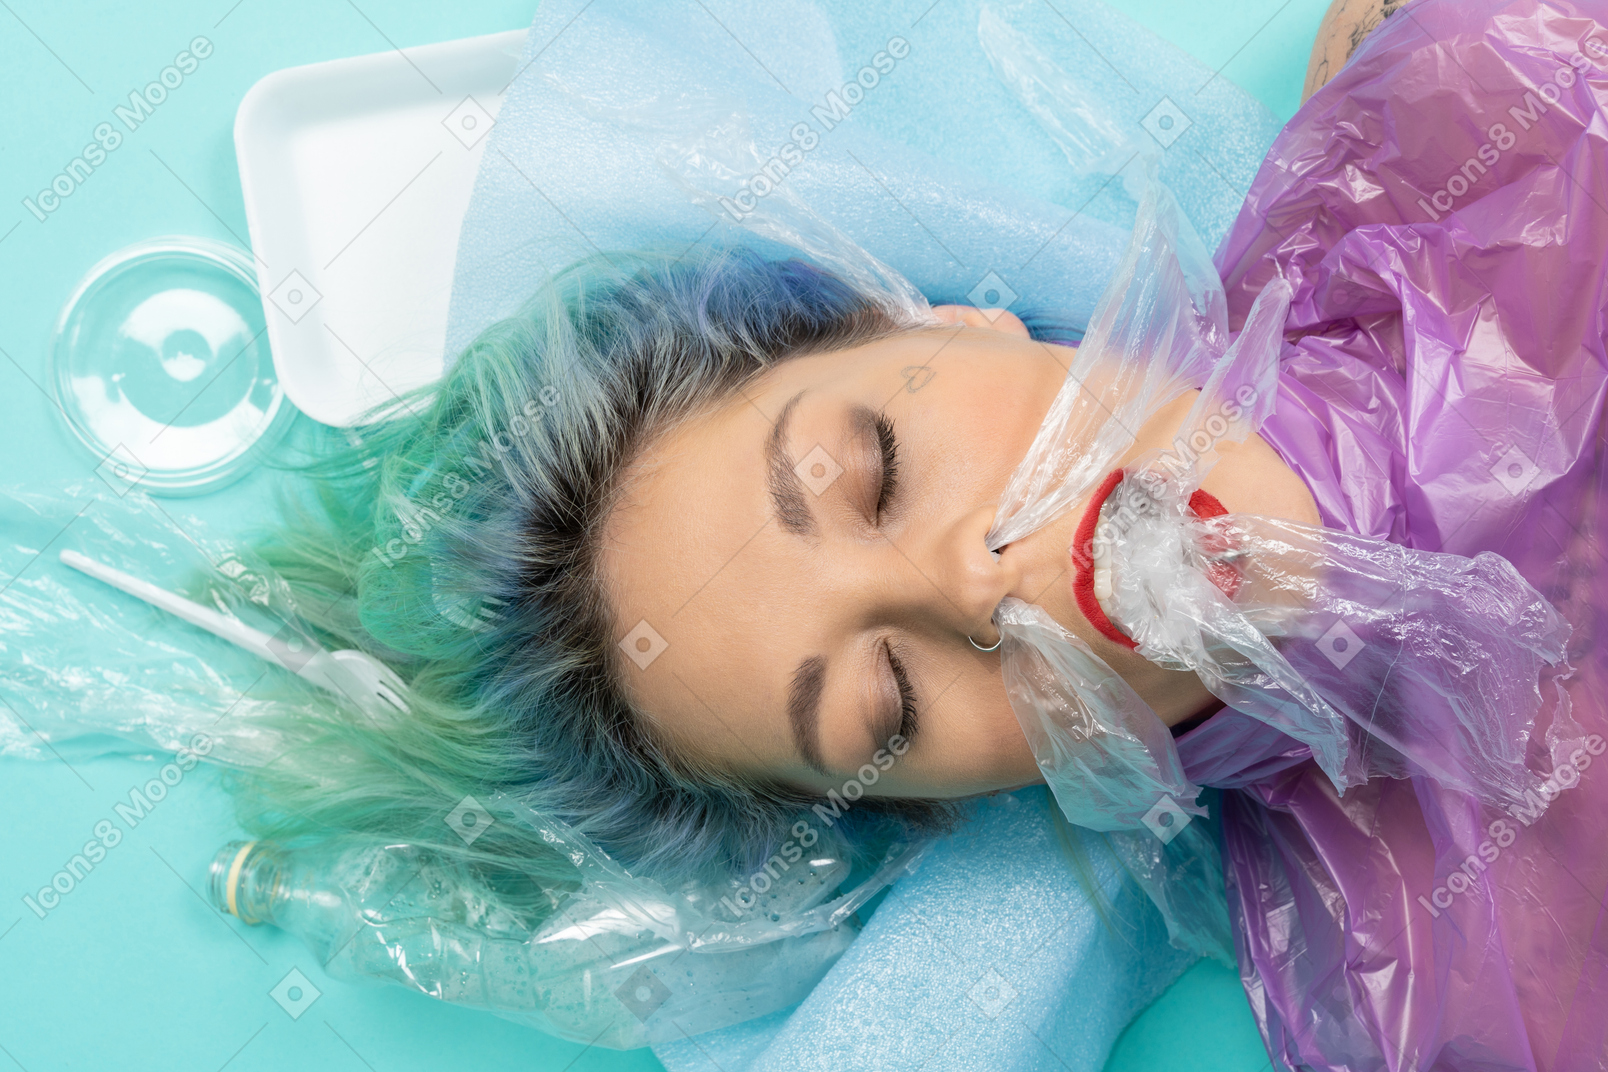 Jeune femme allongée, les yeux fermés, entourée de beaucoup de choses en plastique